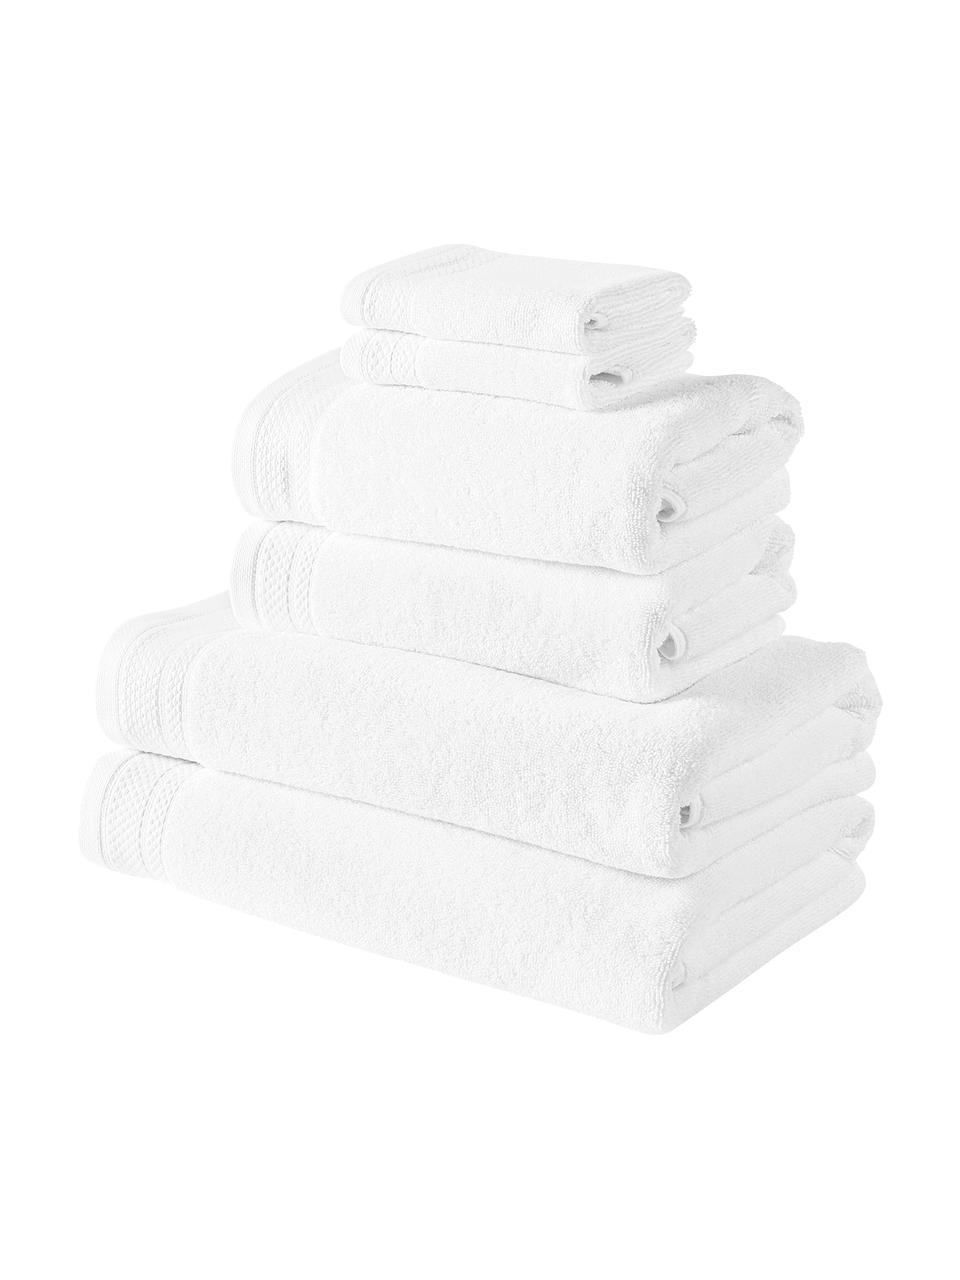 Set de toallas de algodón ecológico Premium, 6 uds., 100% algodón con certificado GOTS
Gramaje superior 600 g/m²

El material utilizado para este producto ha sido probado contra sustancias nocivas y está certificado según el STANDARD 100 por OEKO-TEX®,, IS025 189577, OETI., Blanco, Set de diferentes tamaños